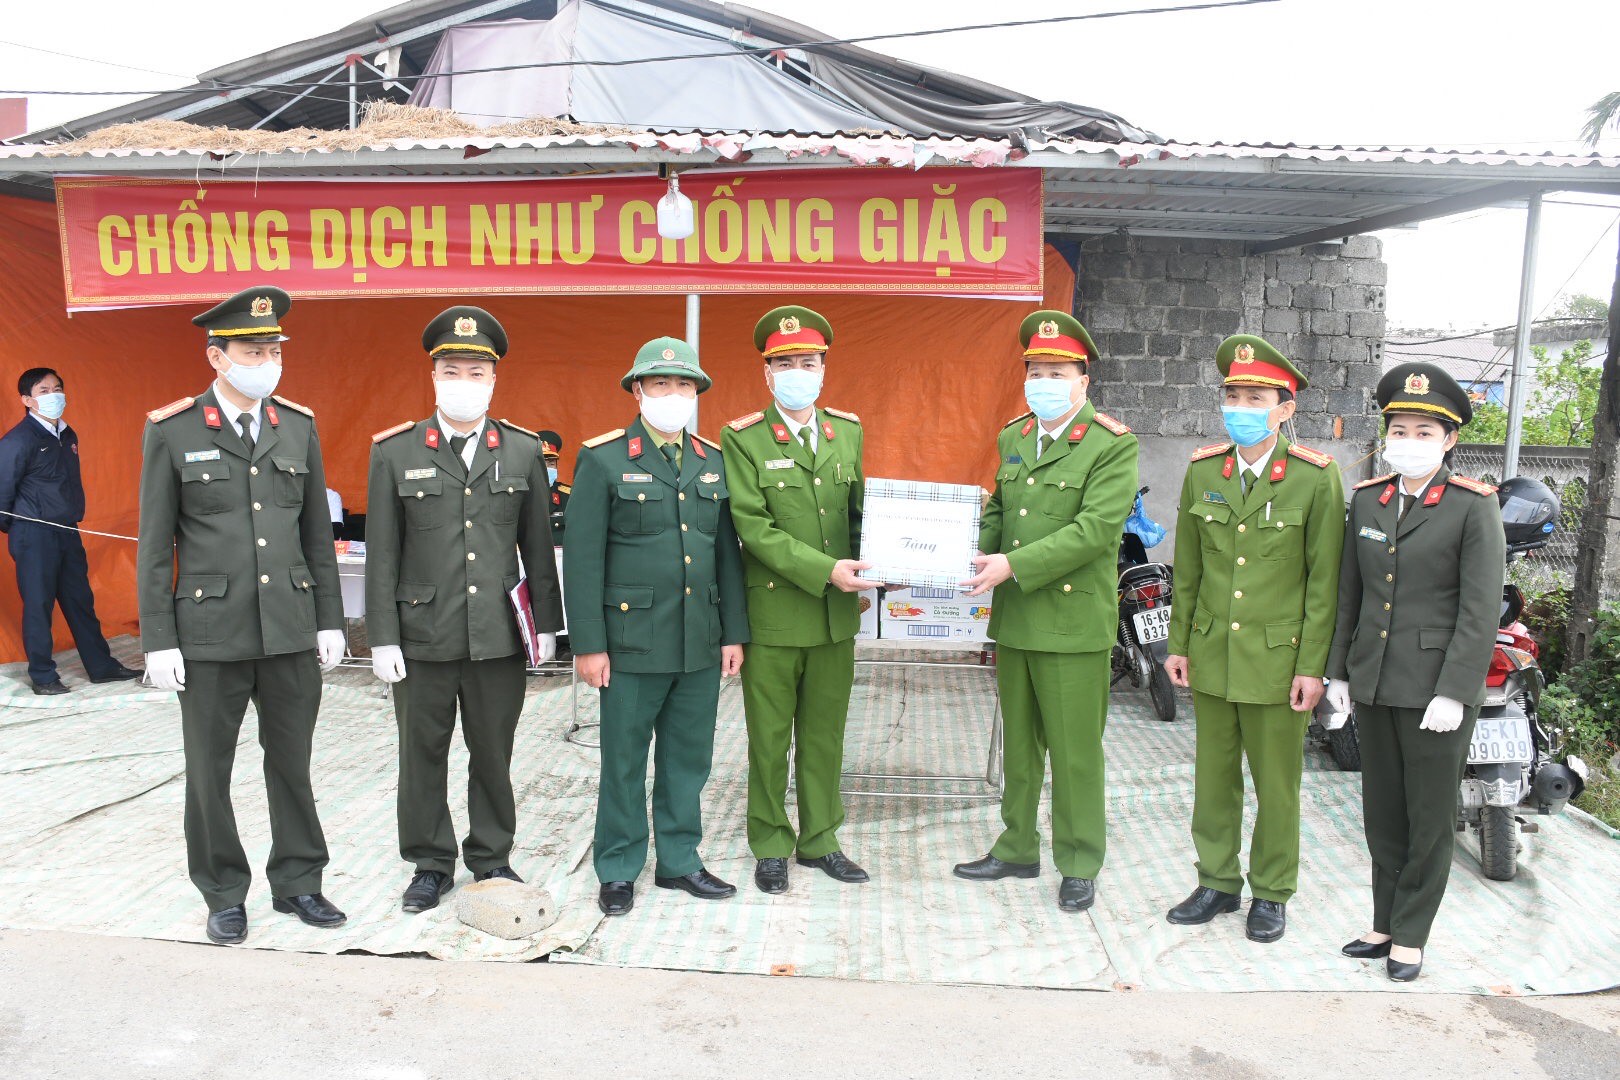 Dại tá Bùi Trung Thành thăm hỏi, tặng qua các chót kiểm dịch QL37 tại khu vực  cầu Chanh huyện Vĩnh Baot;